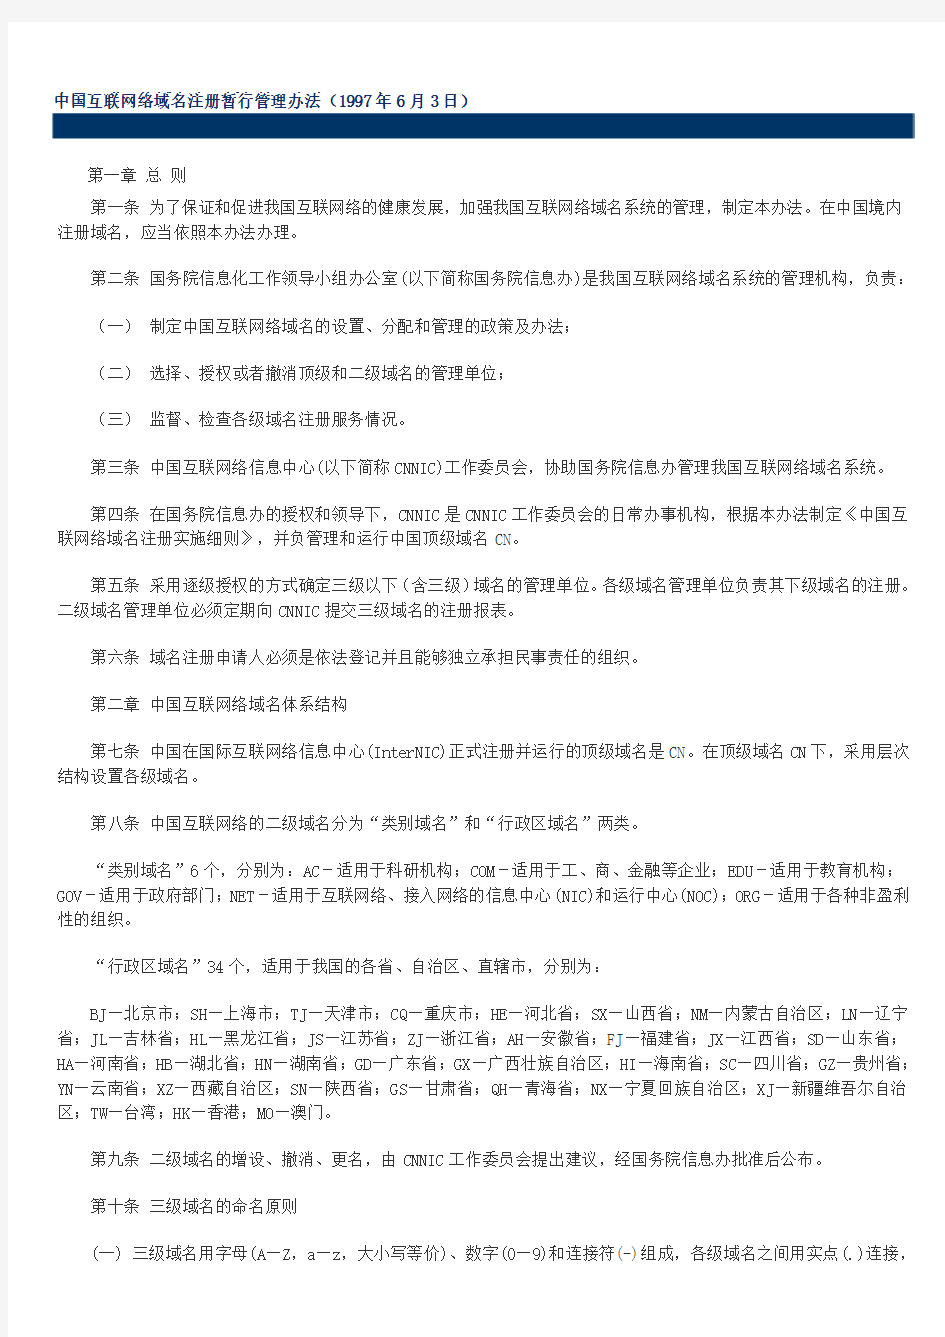 中国互联网络域名注册暂行管理办法(1997年6月3日)